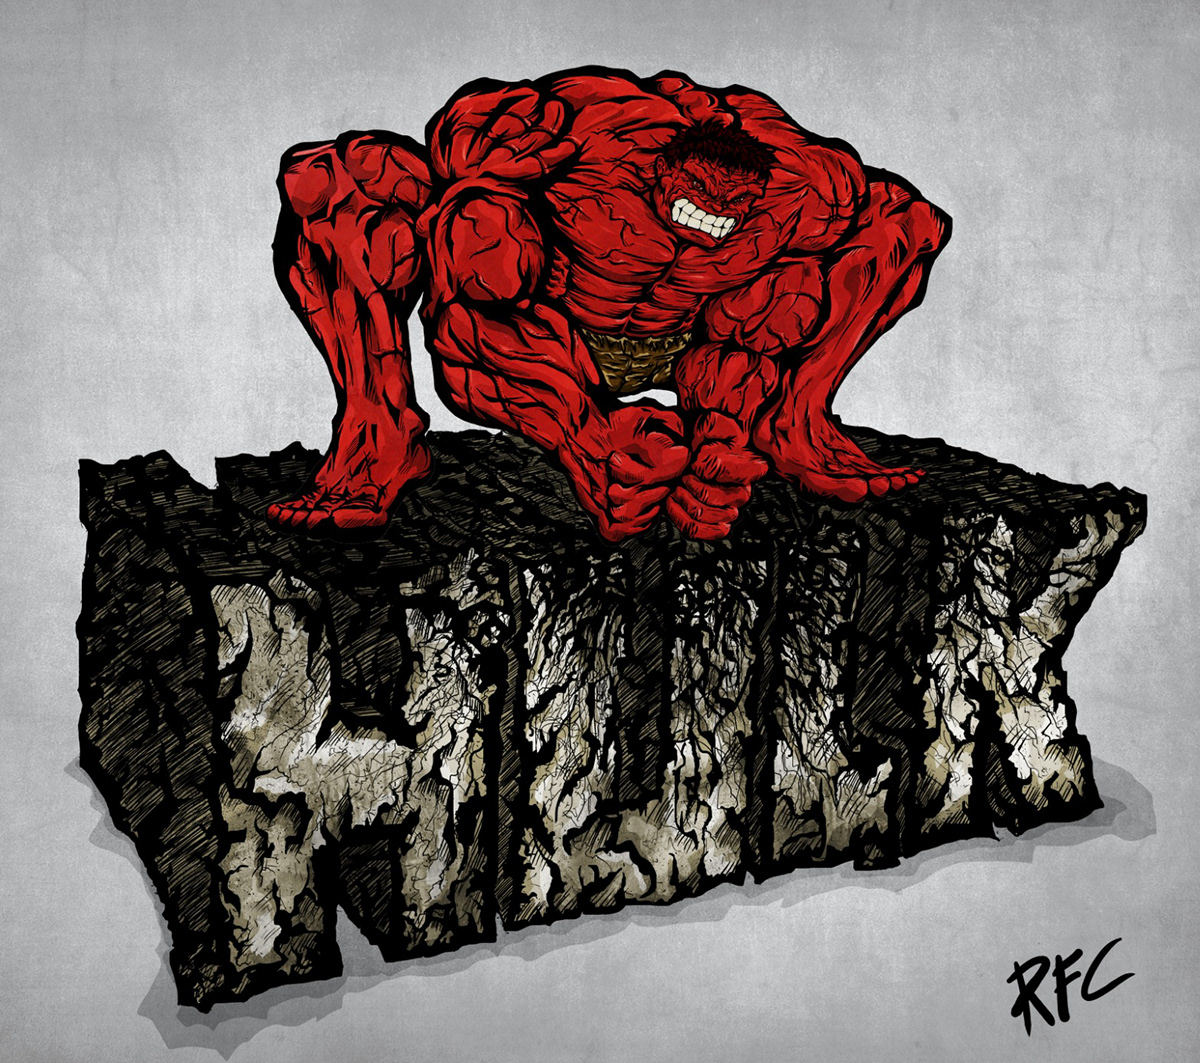 Hulk ilustracion coloreado digital comic